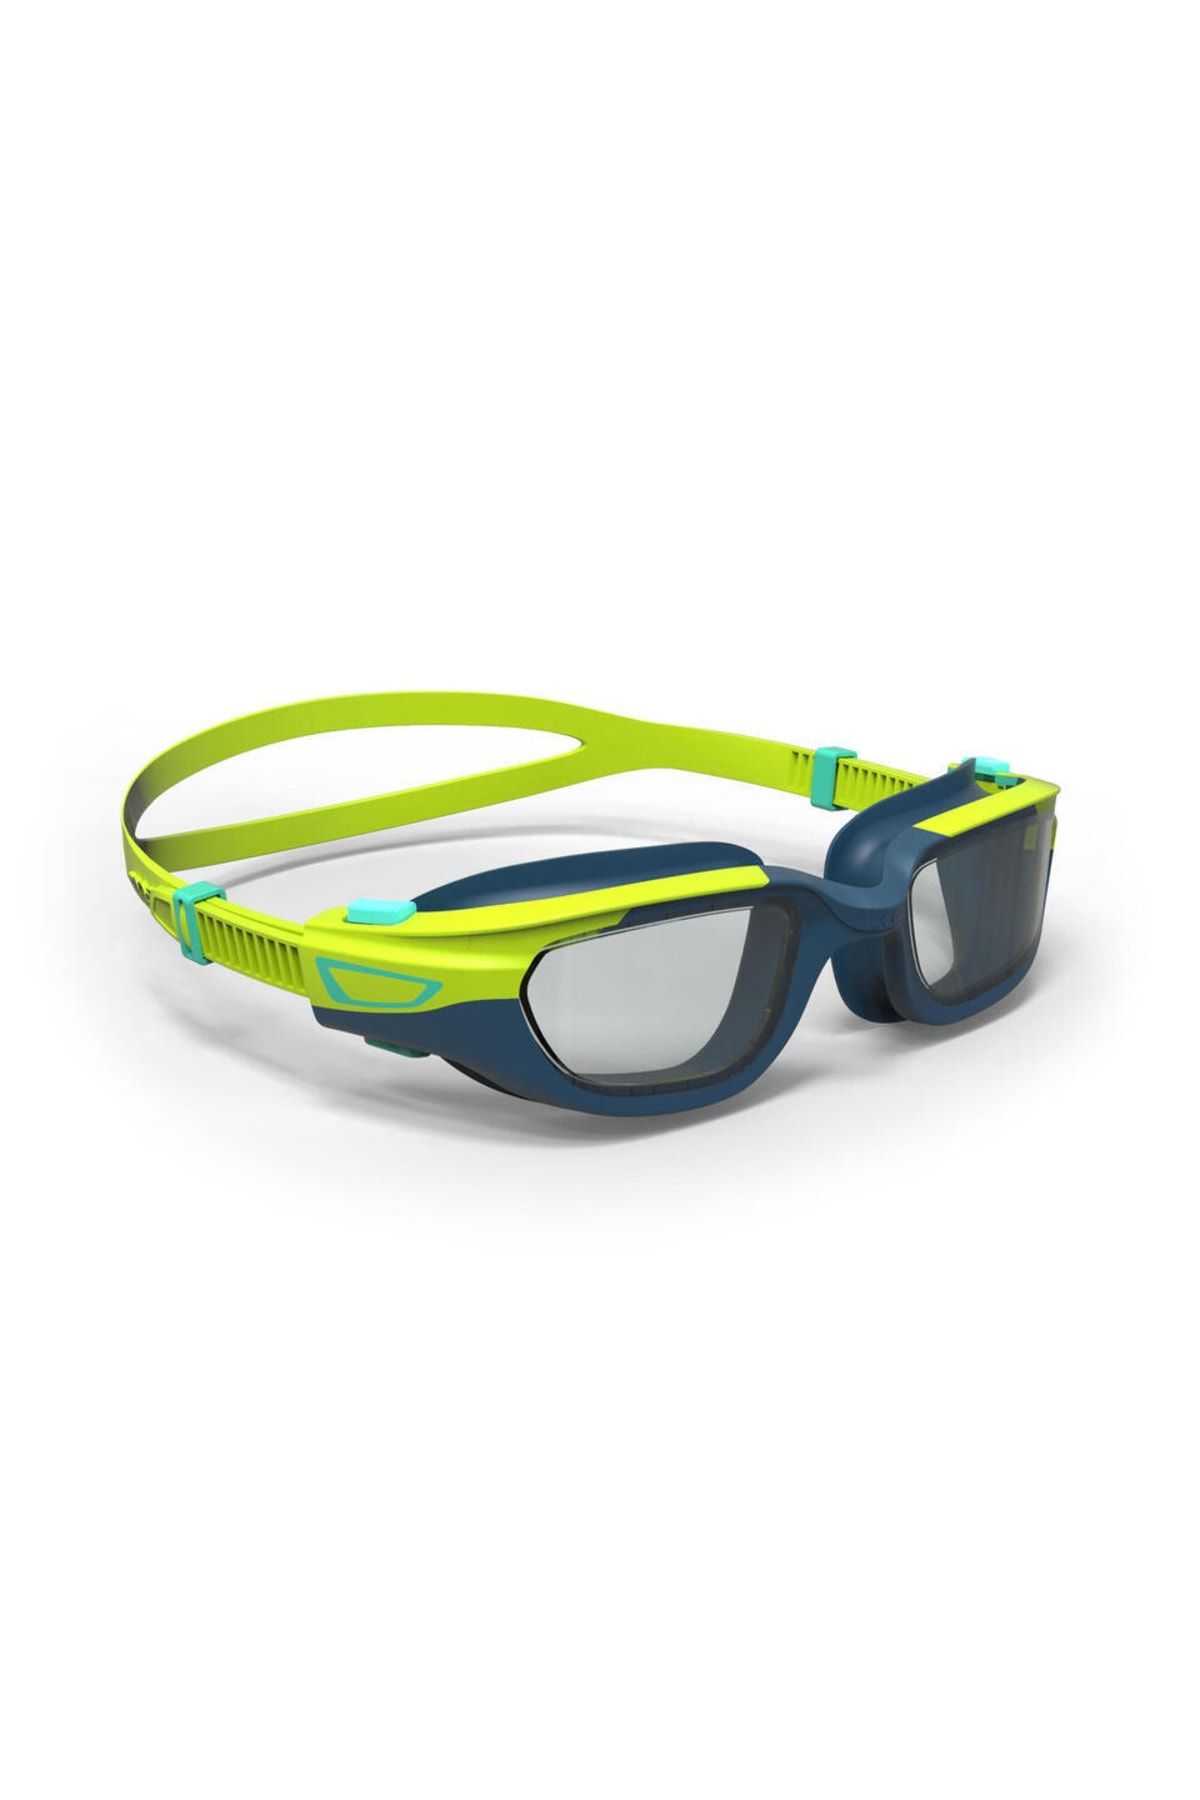 Decathlon - Çocuk Yüzücü Gözlüğü Çocuk Yüzme Gözlüğü S Boy Yeşil Pembe Spırıt